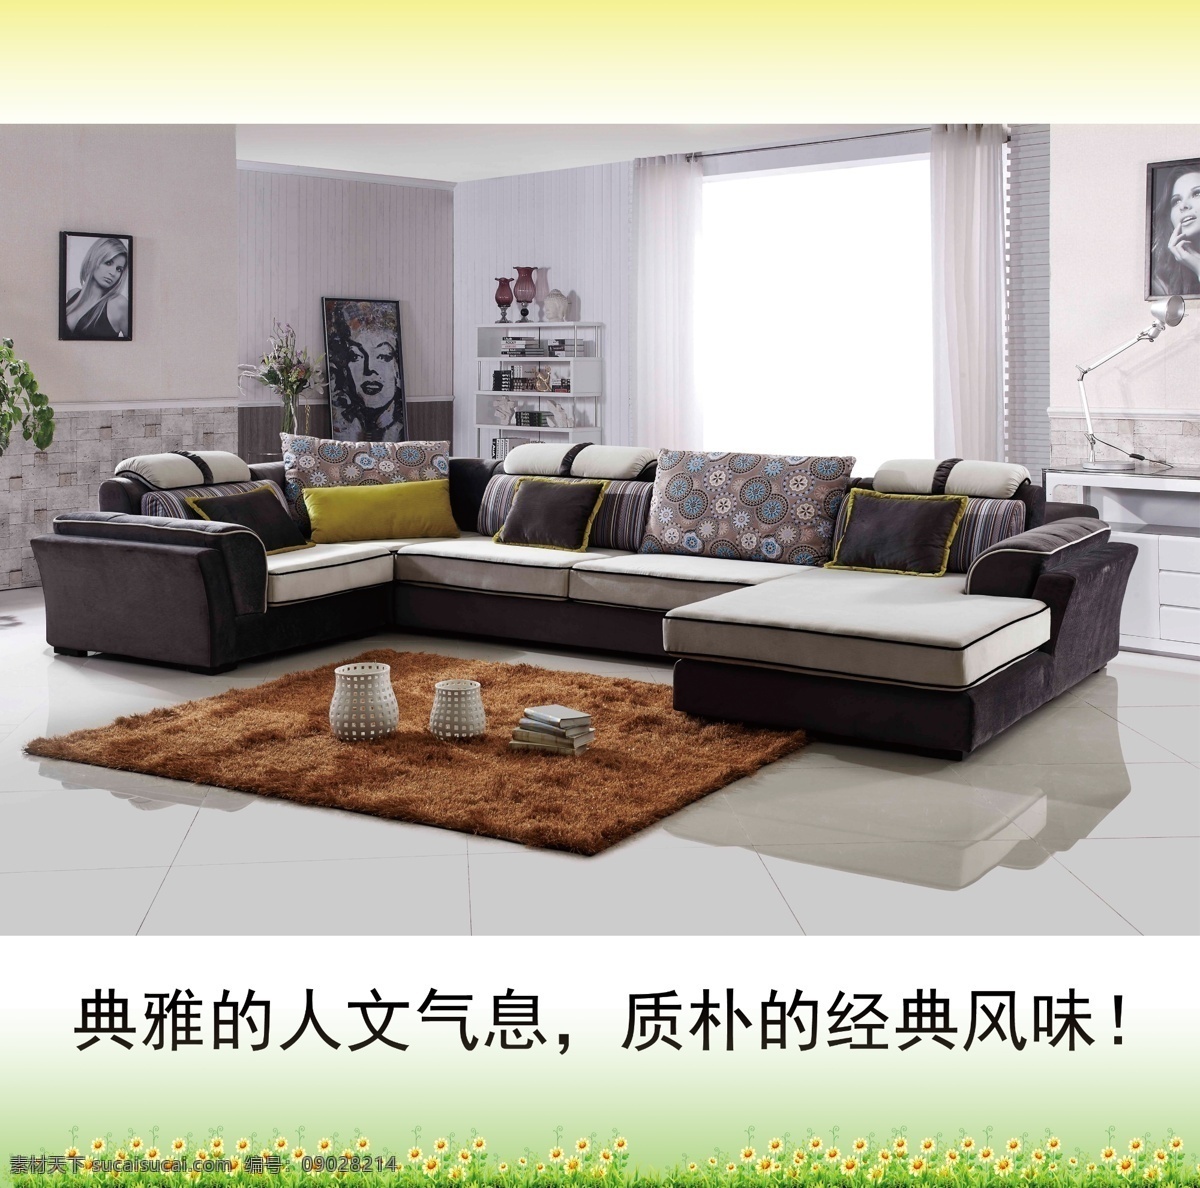 布艺沙发系列 室内设计 高档沙发 经典风味 人文气息 高清大图 白色